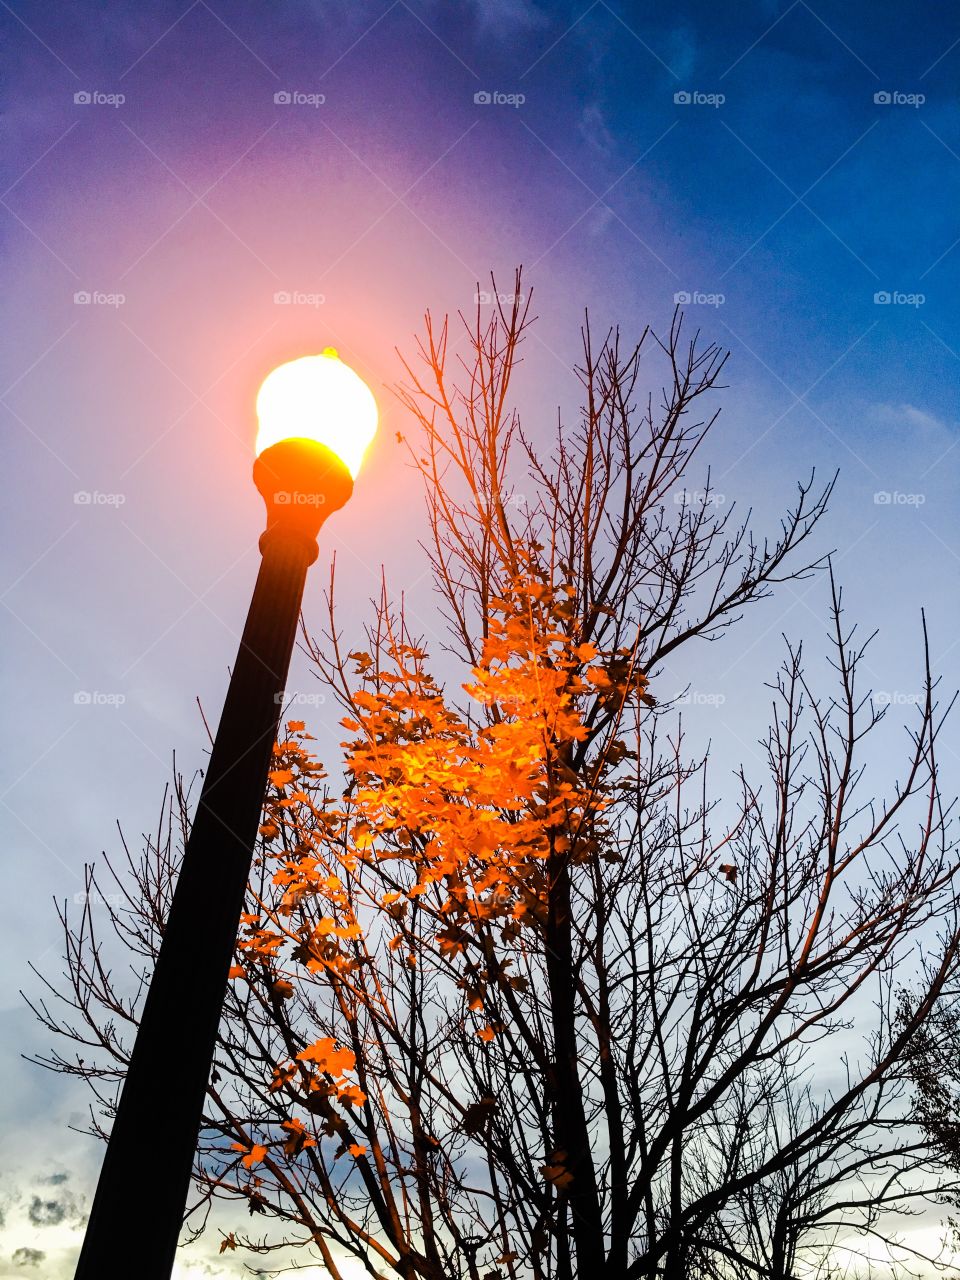 Lamp in fall